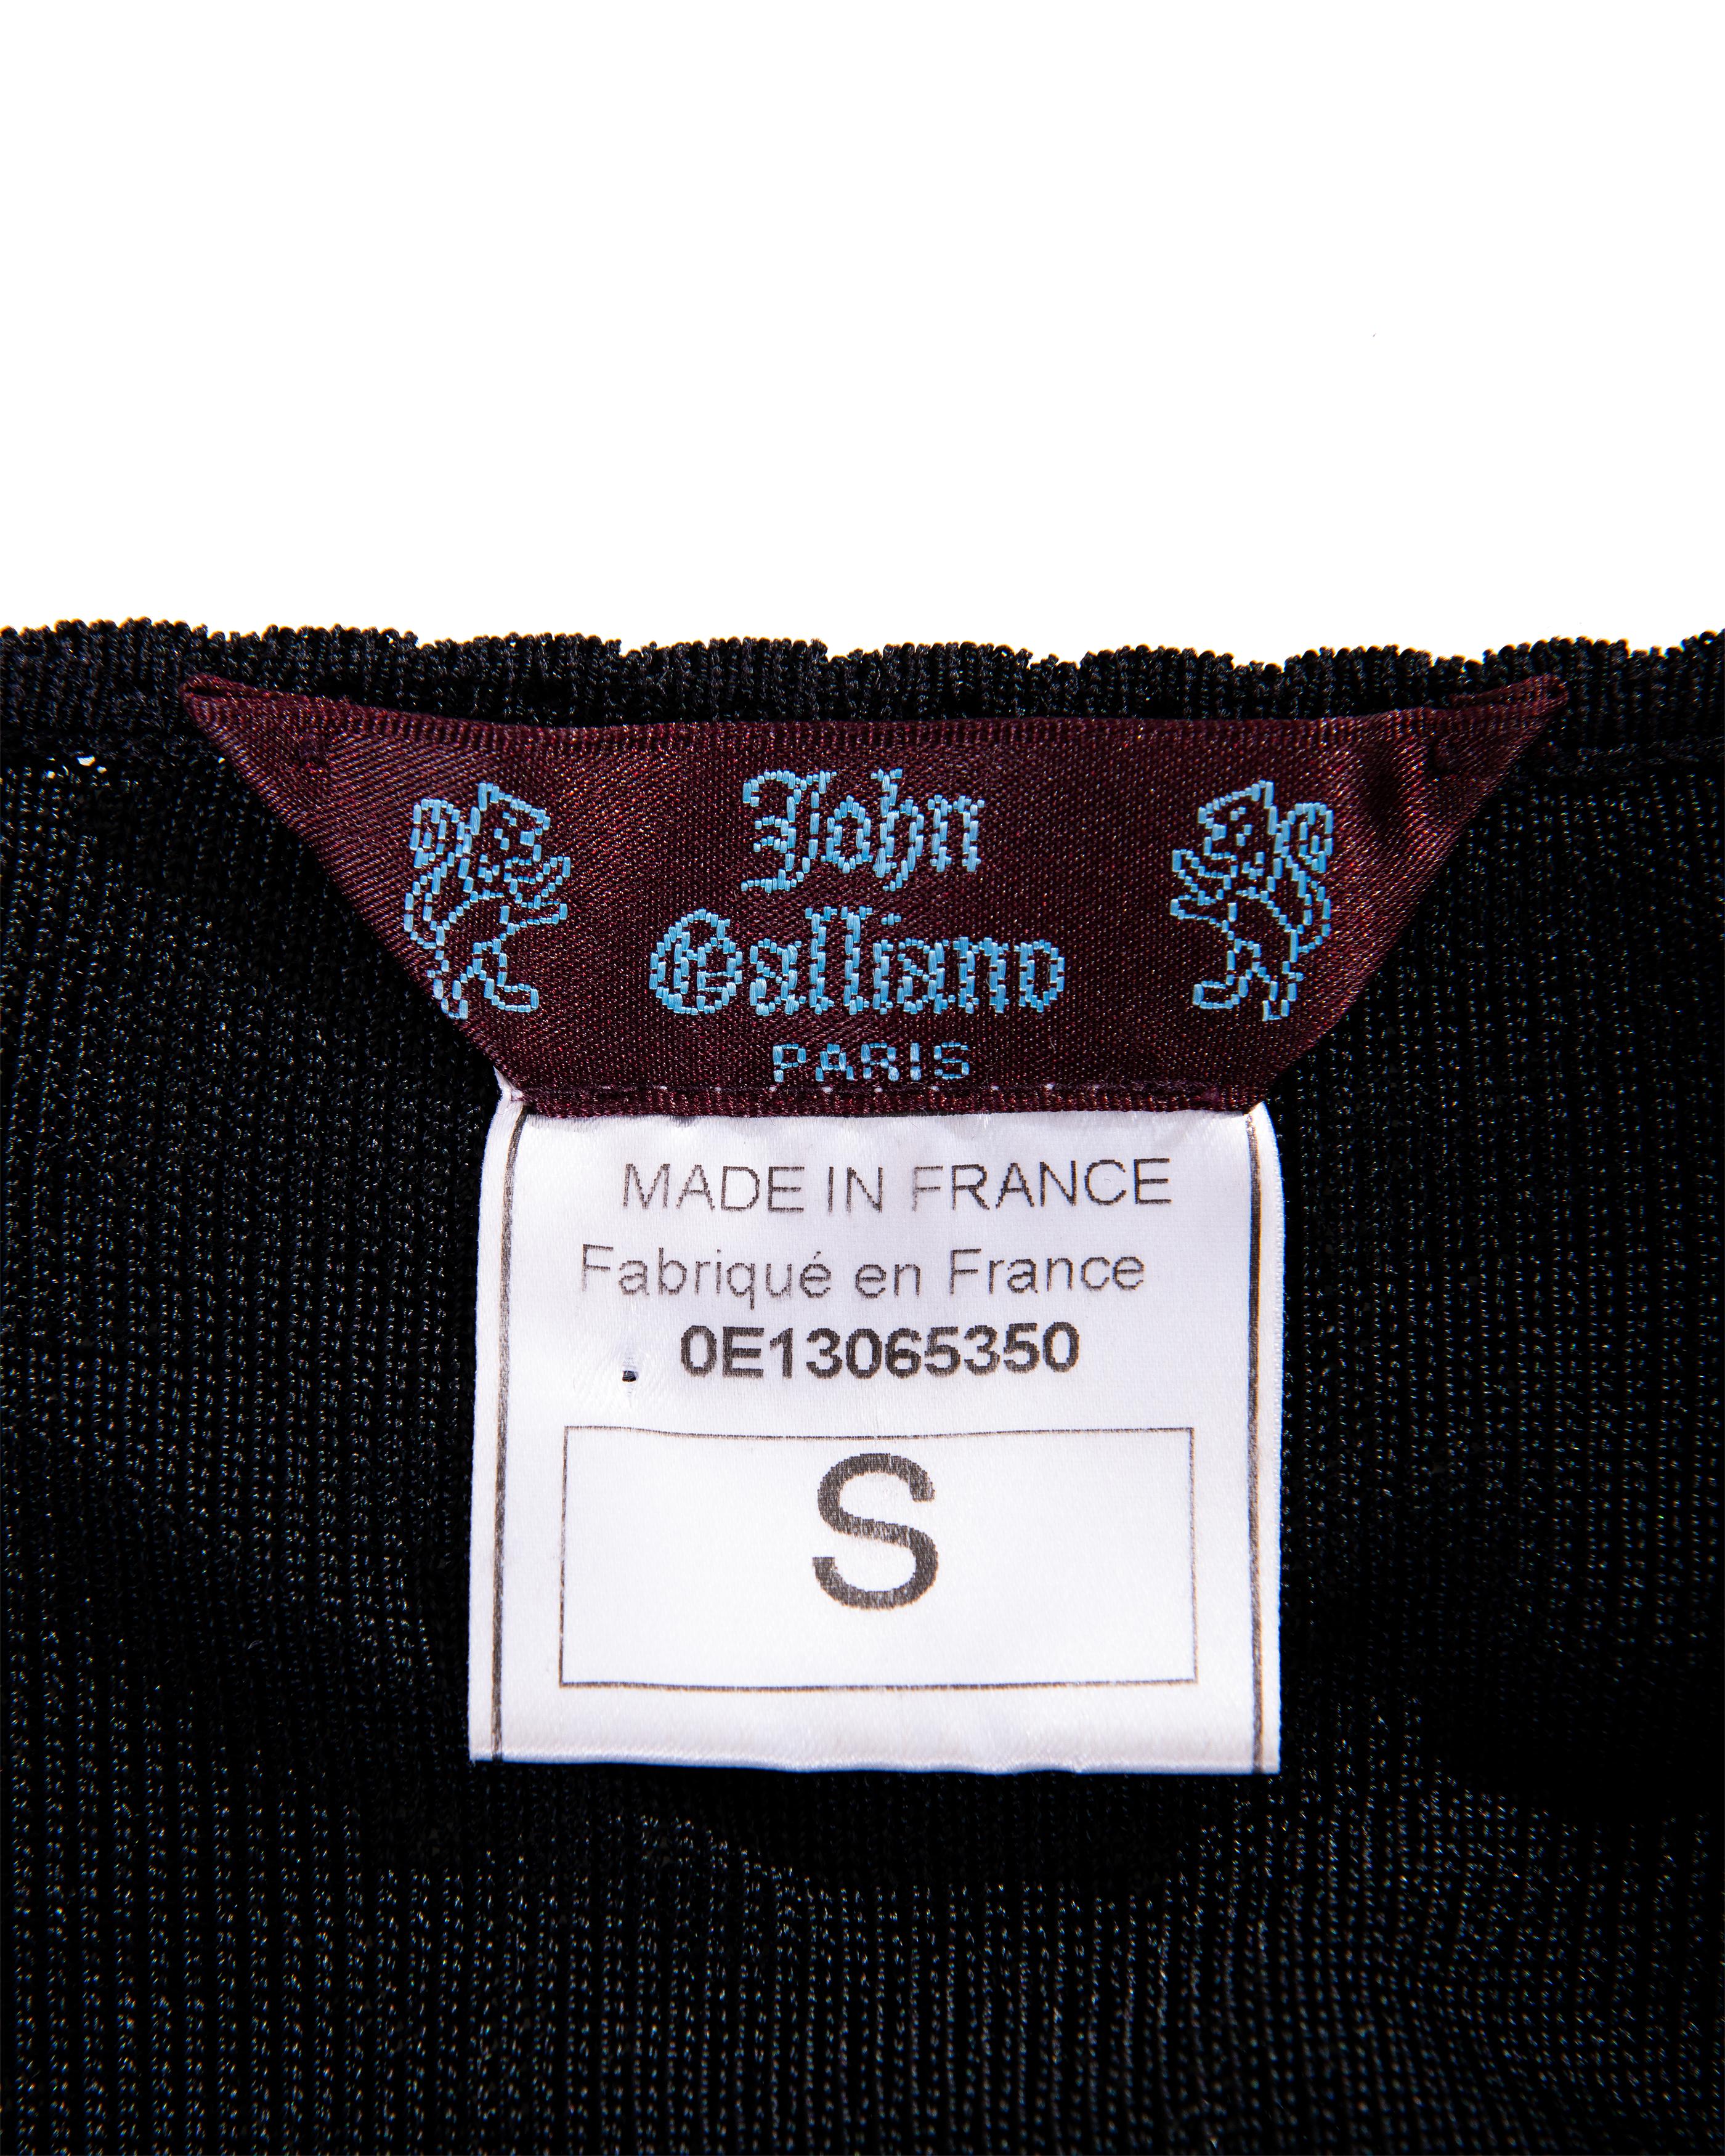 Resort 2000 John Galliano Black Openwork Knit Knee-Length Slip Dress For Sale 4